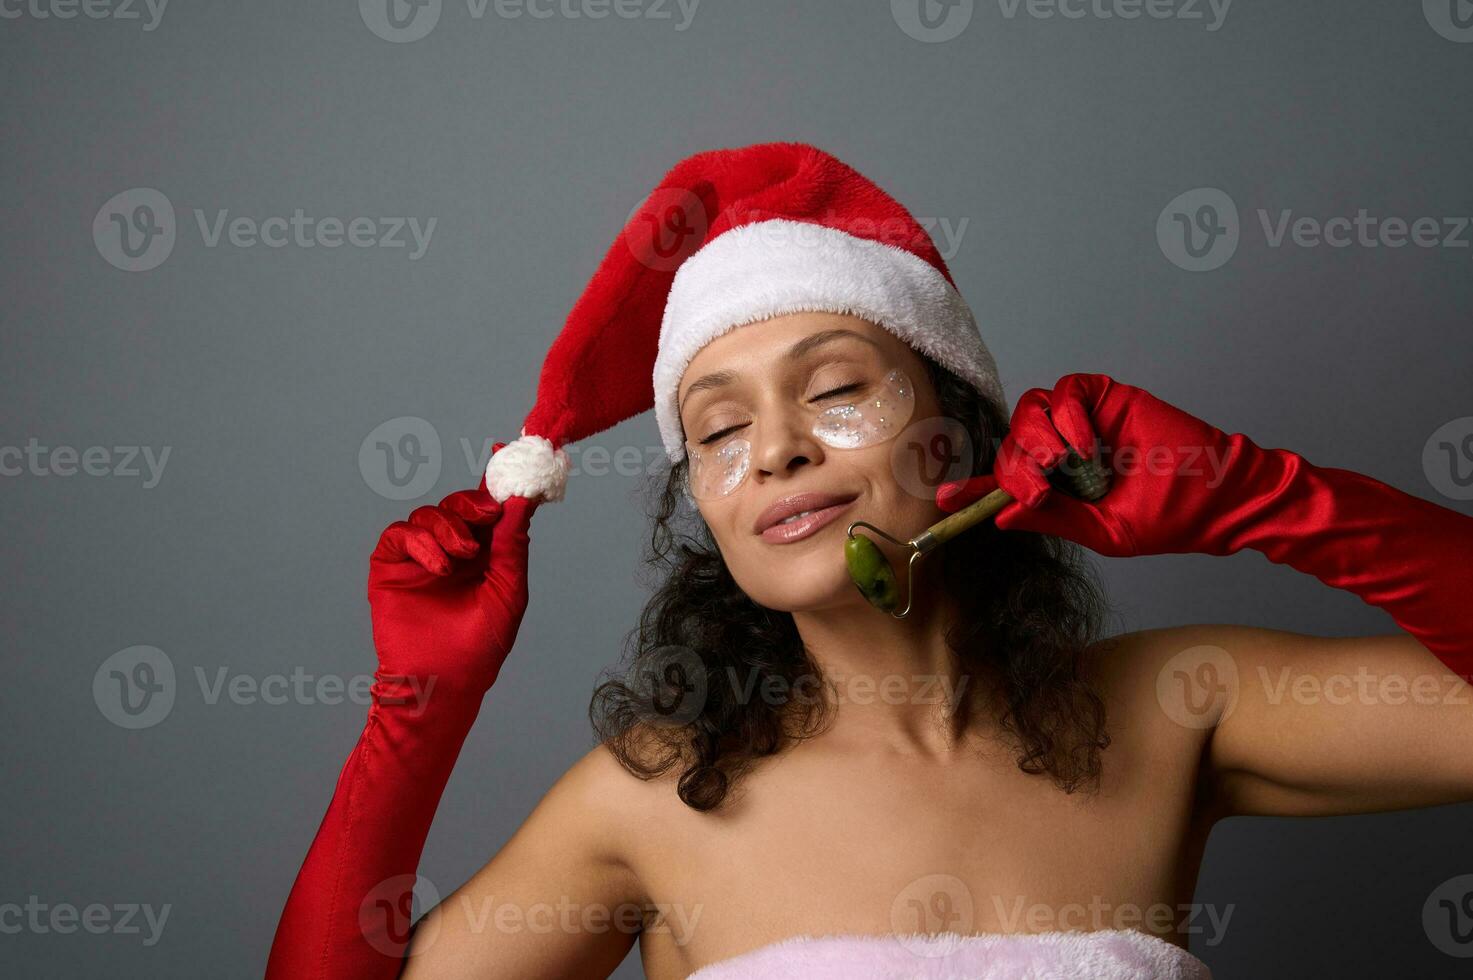 attraente donna nel Santa costume usi giada rullo massaggiatore per lifting e linfatico drenaggio facciale massaggio. pelle cura, cosmetologia concetto per Natale annuncio pubblicitario di bellezza saloni e terme foto